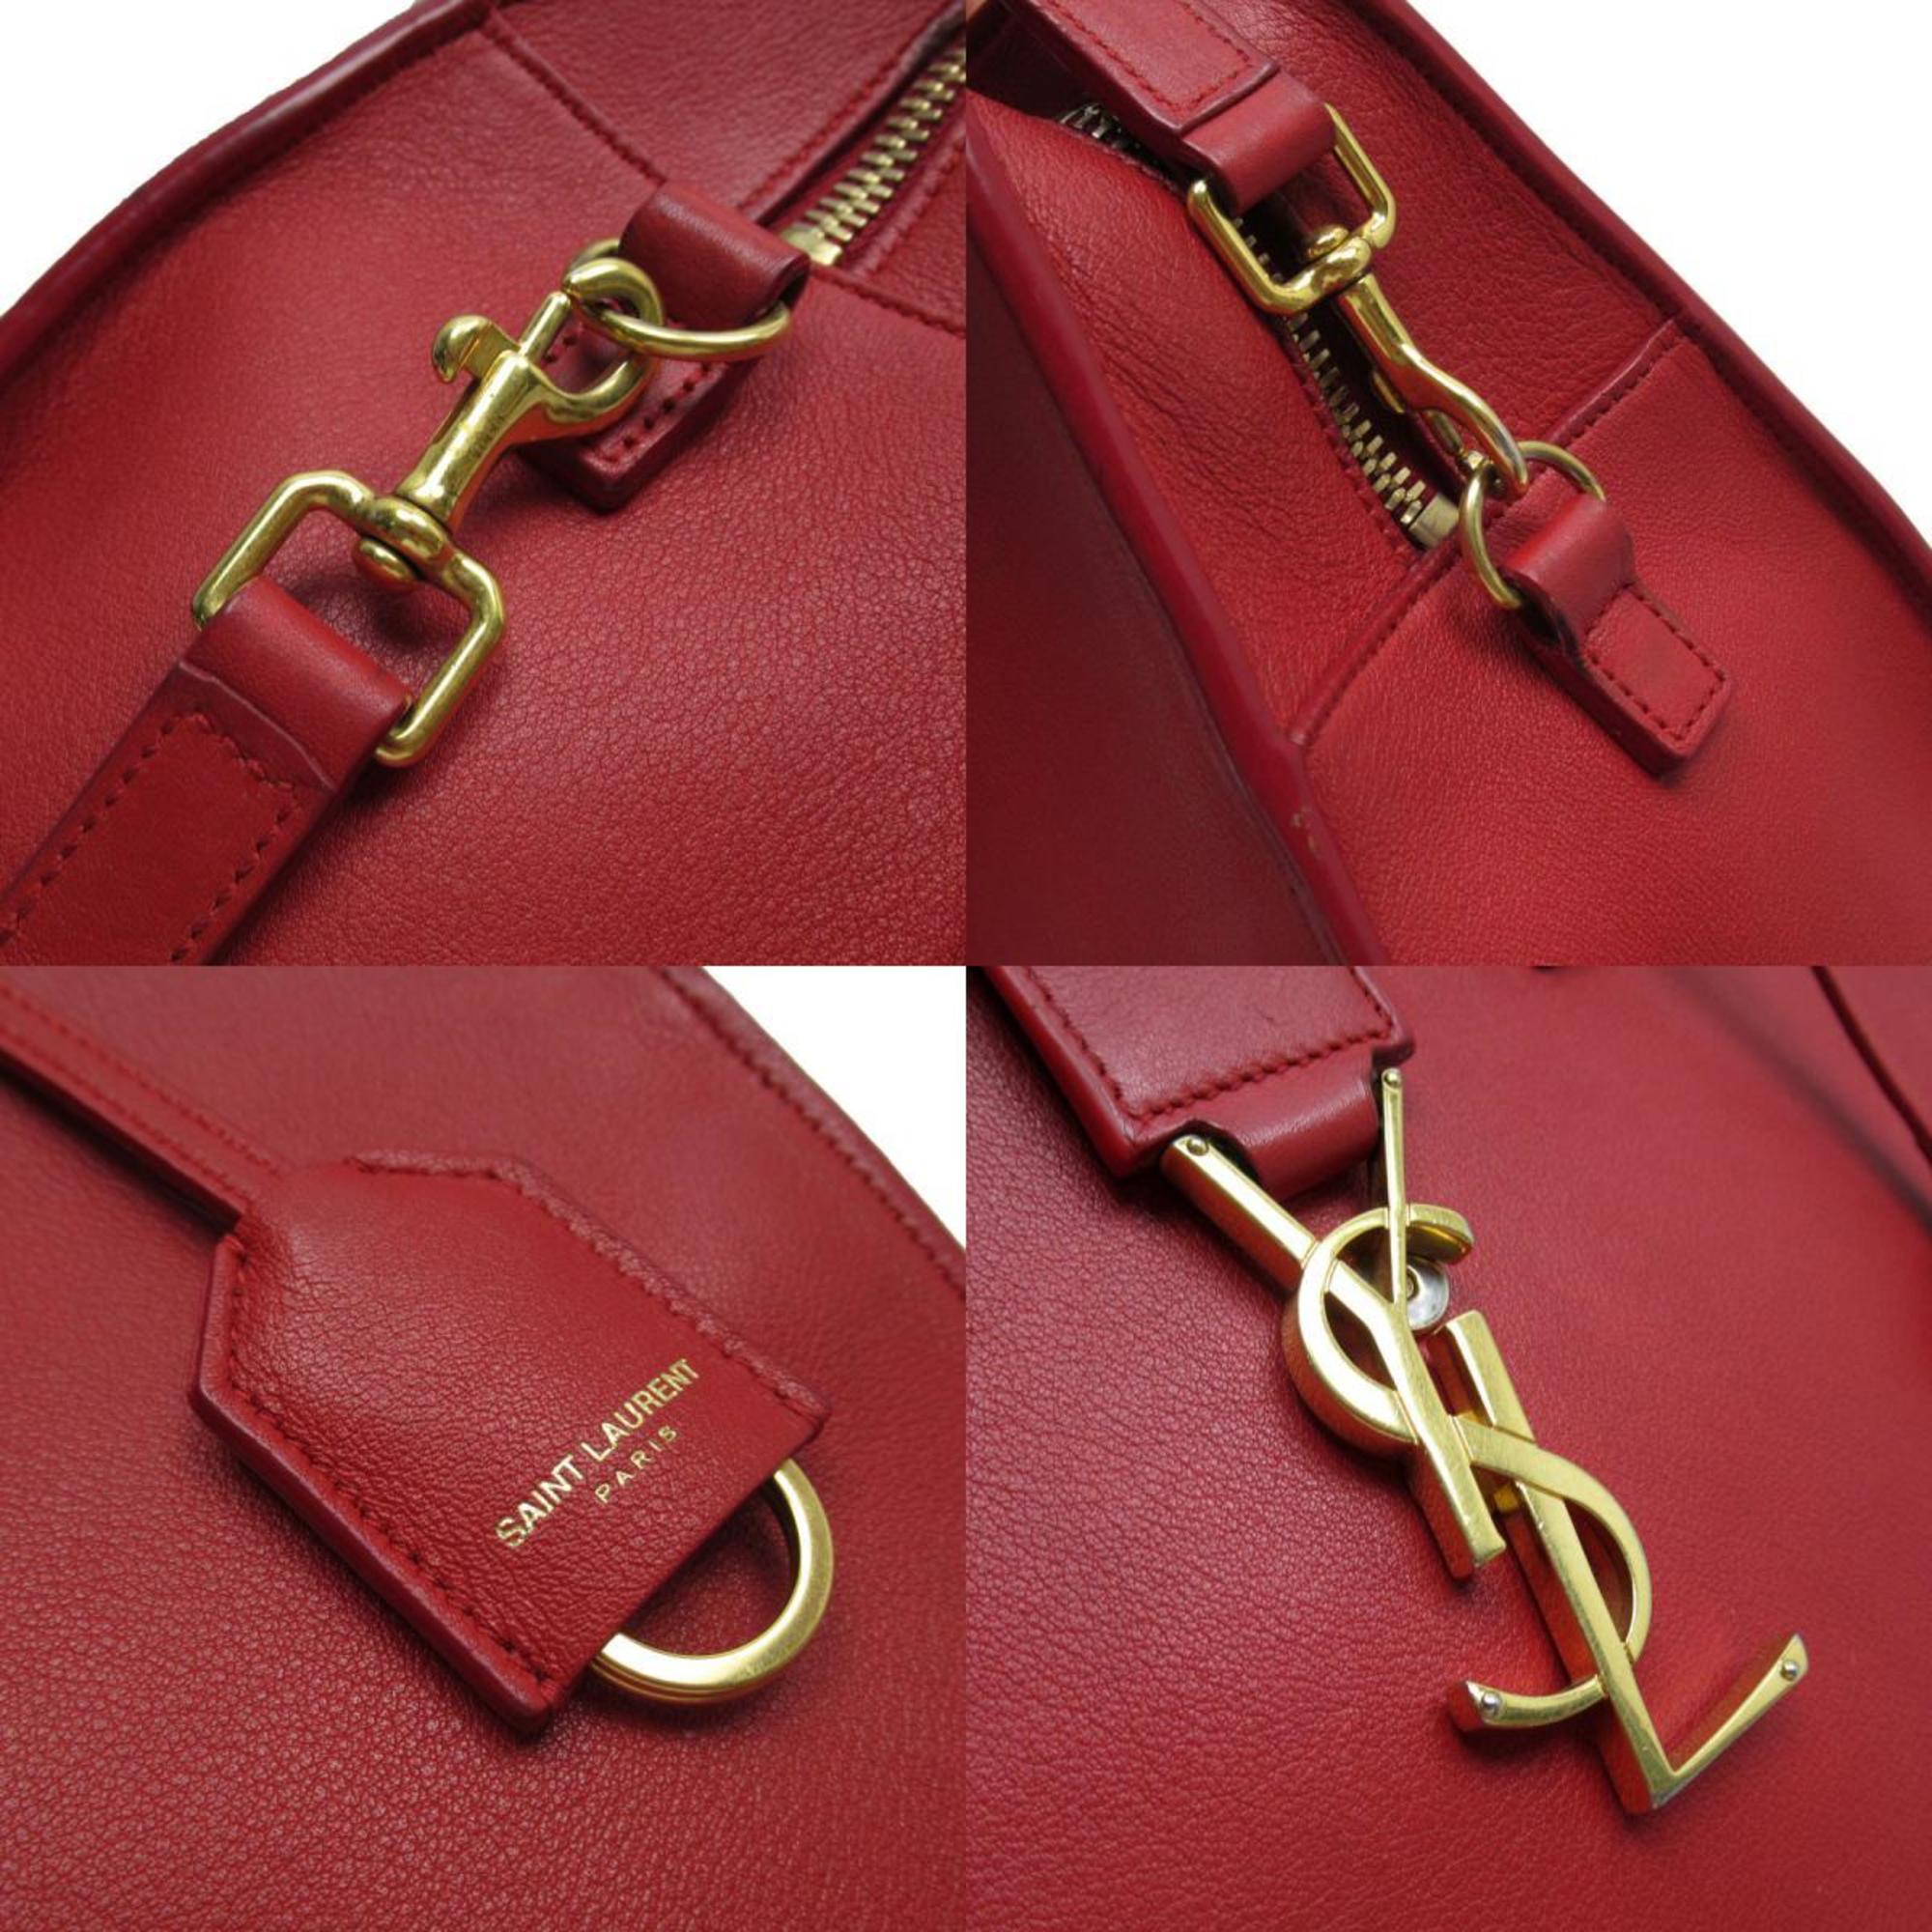 Saint Laurent SAINT LAURENT handbag shoulder bag Baby Cabas leather red gold women's w0305a